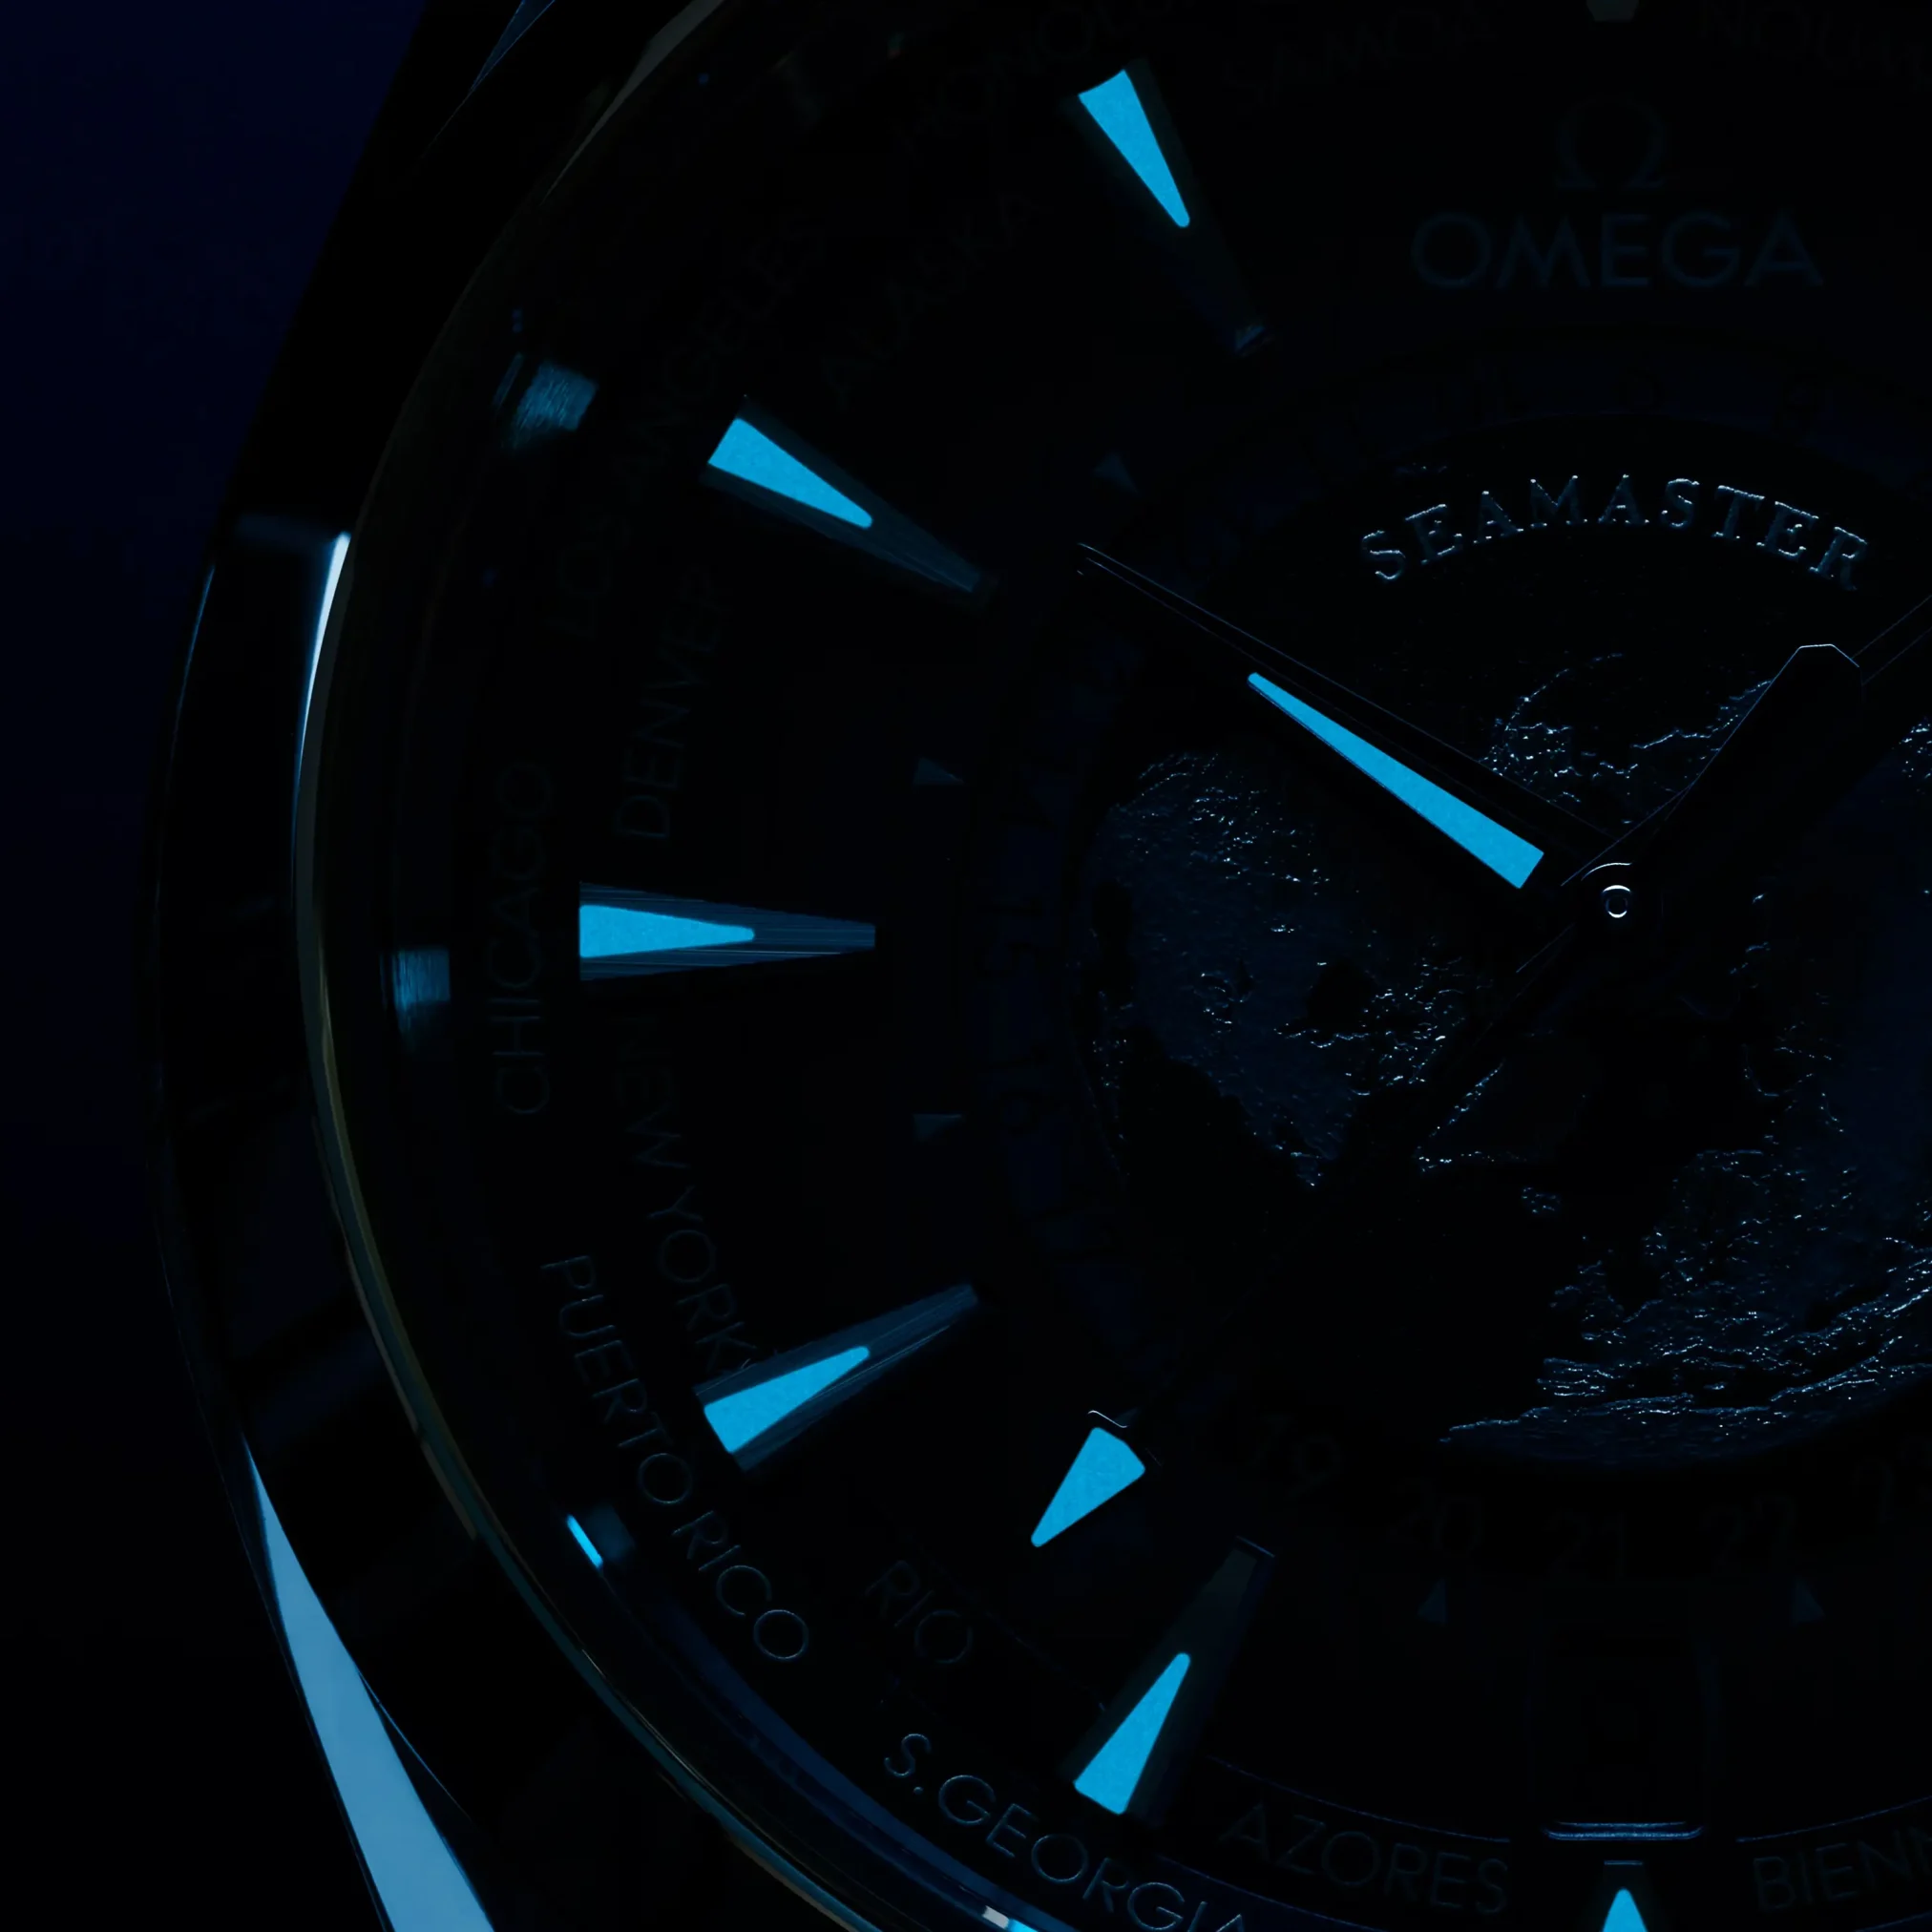 Đồng hồ Omega Seamaster Aqua Terra 150M GMT Worldtimer Summer Blue 220.12.43.22.03.002 mặt số màu xanh. Thiết kế lộ cơ. Dây đeo bằng cao su. Thân vỏ bằng thép.